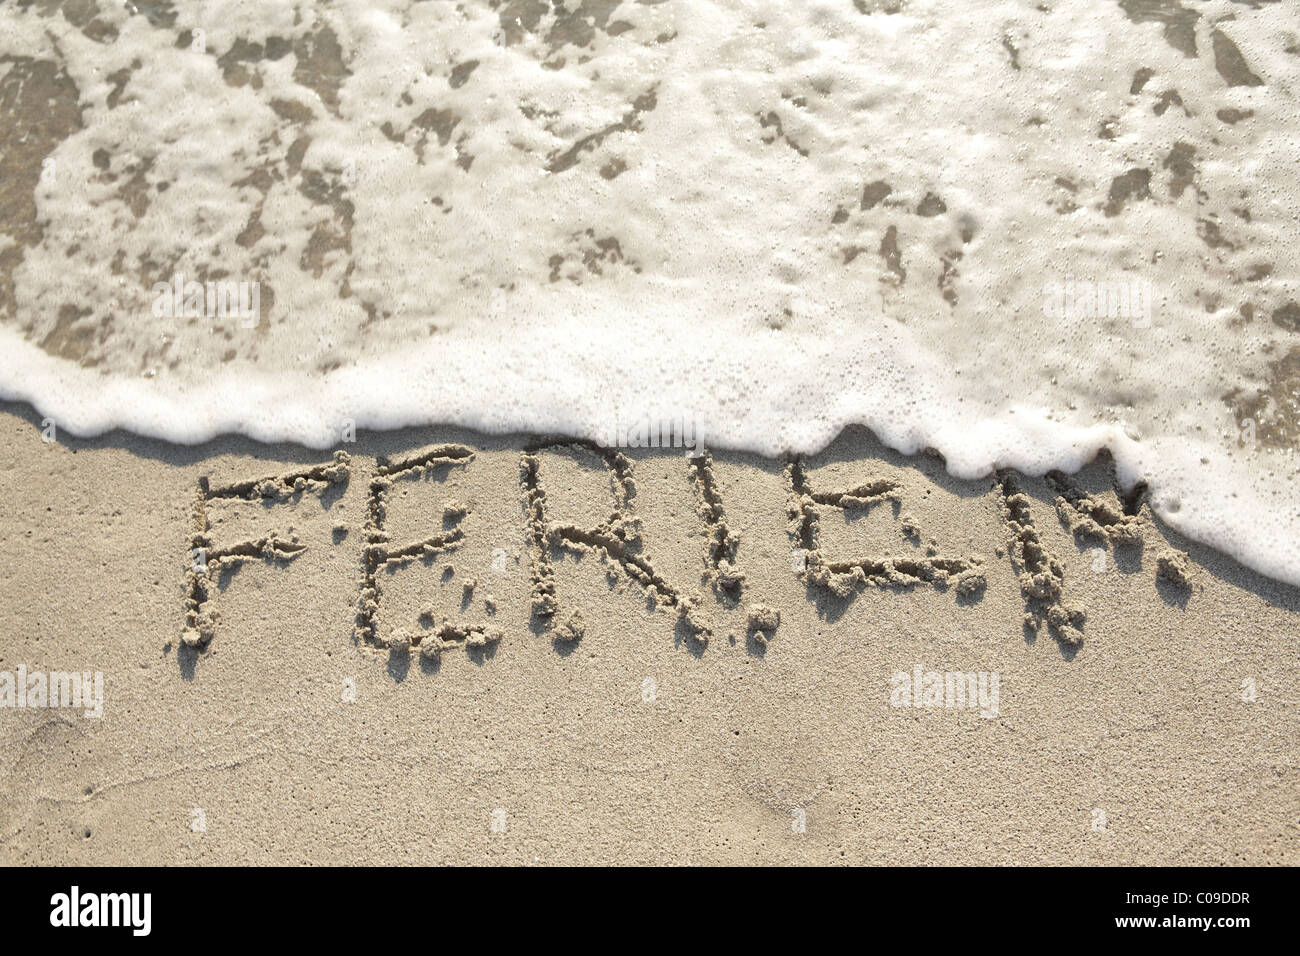 Ferien, Deutsch für Urlaub, geschrieben im nassen Sand von einer Welle weggespült Stockfoto